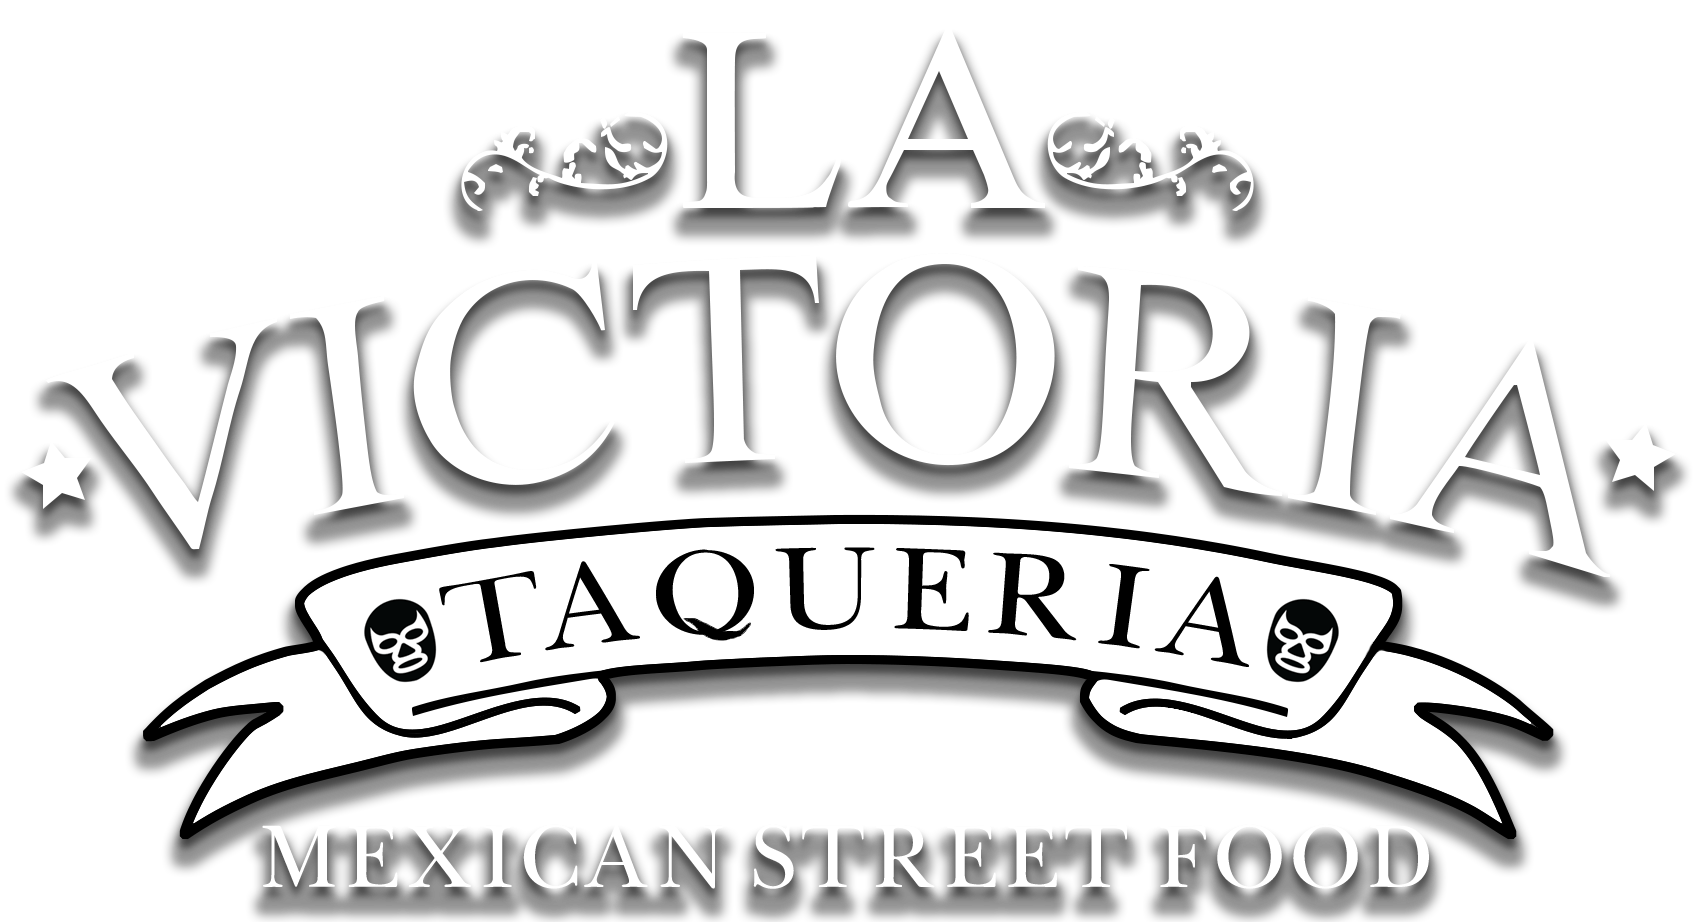 You are currently viewing La Victoria Taqueria